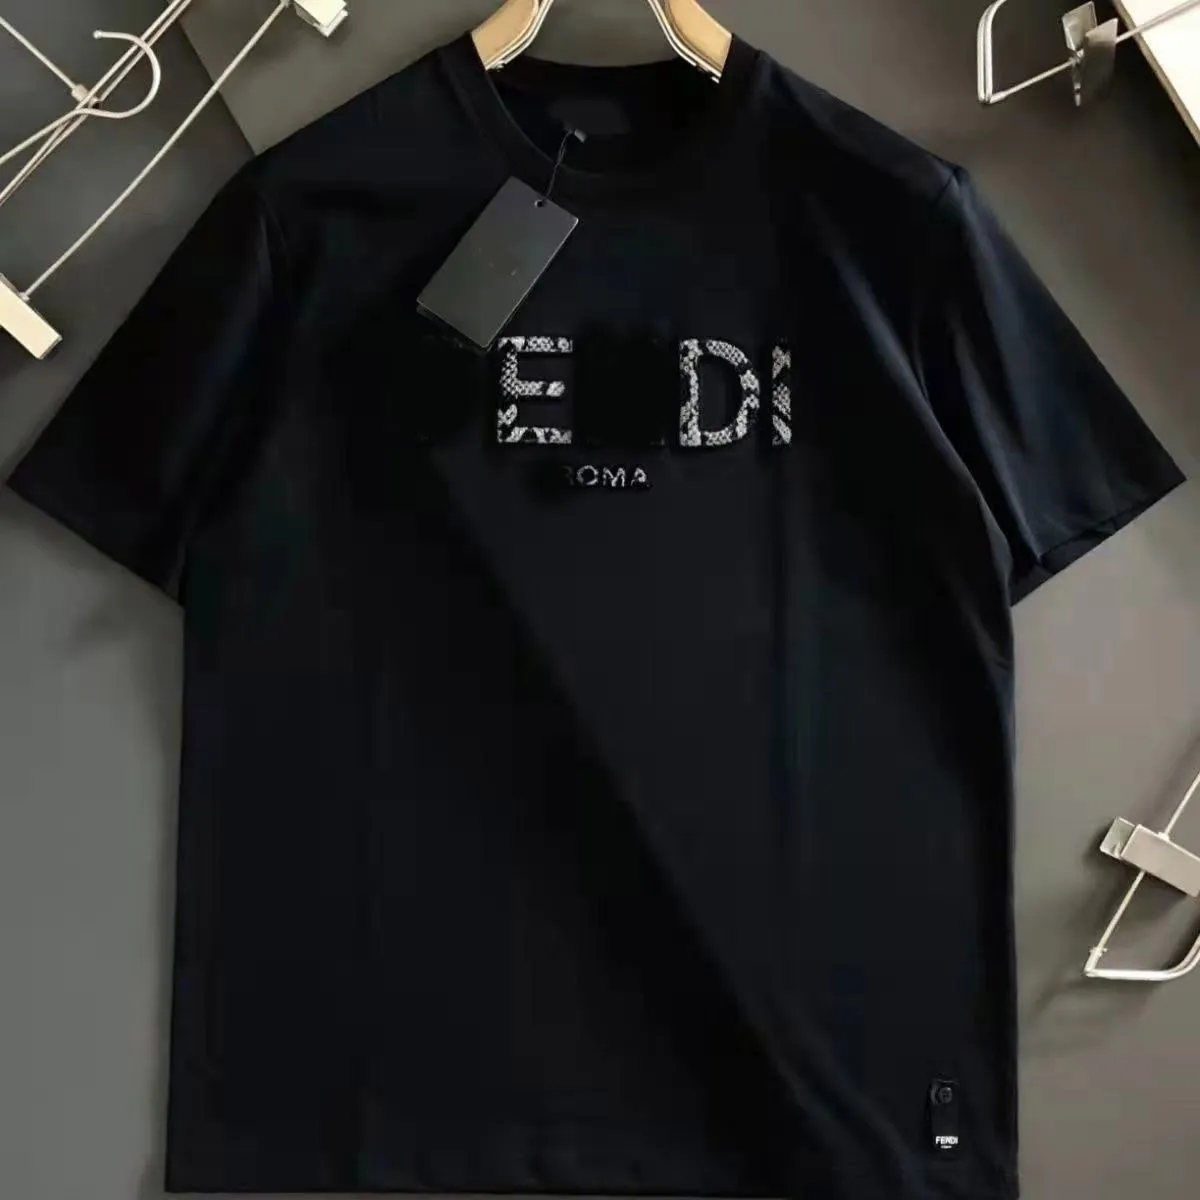 Мода T Рубашки мужские женские дизайнеры футболки футболки Tees Apparel Tops Man Scual Leart Letter рубашка роскошные одежда улицы шорты рукав одежда Bur Tshirts M-4xl #02